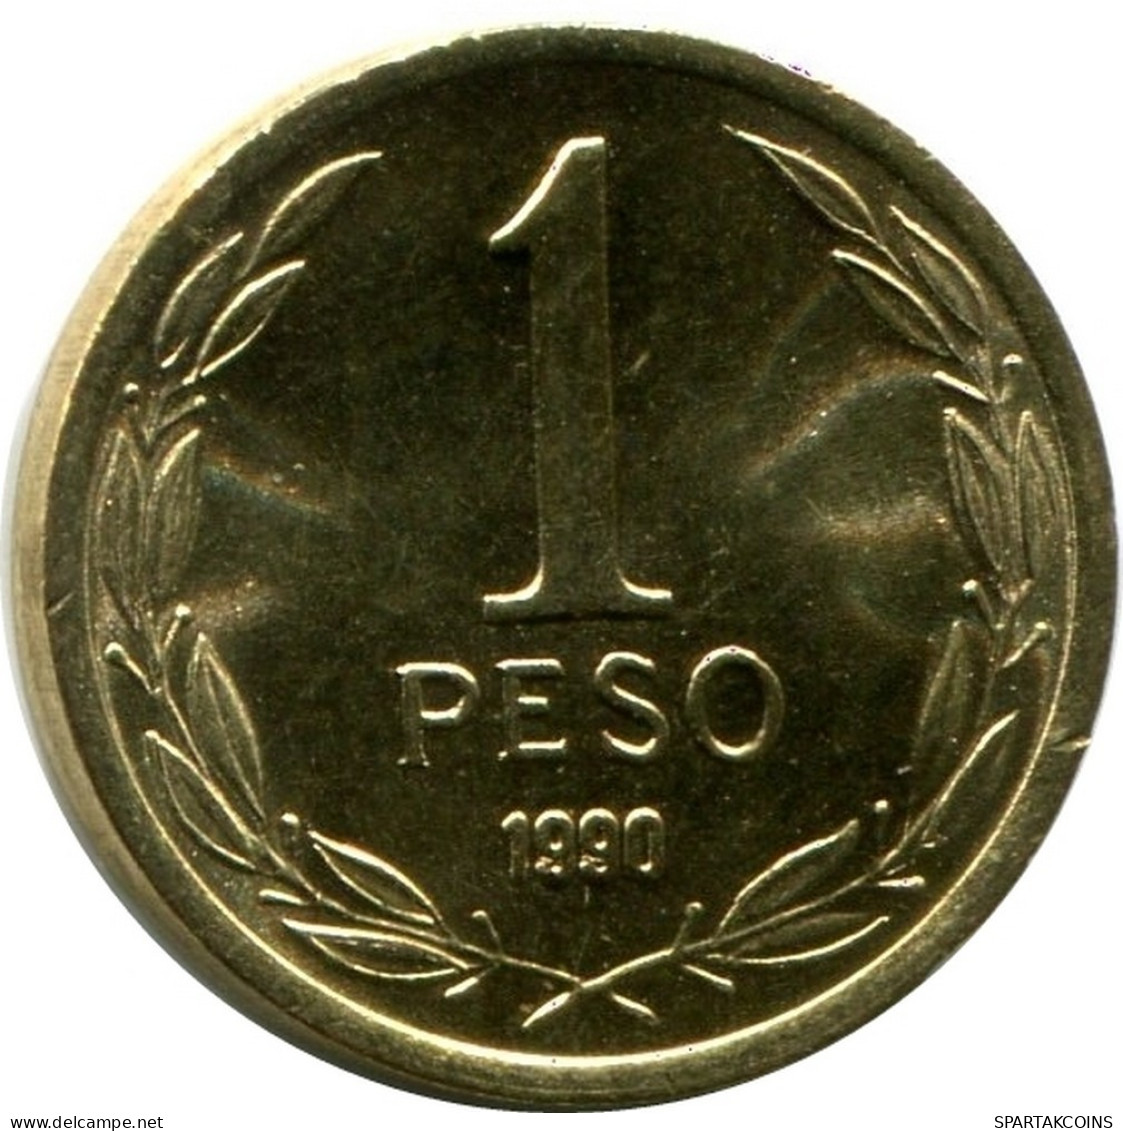 1 PESO 1990 CHILE UNC Coin #M10148.U.A - Chili